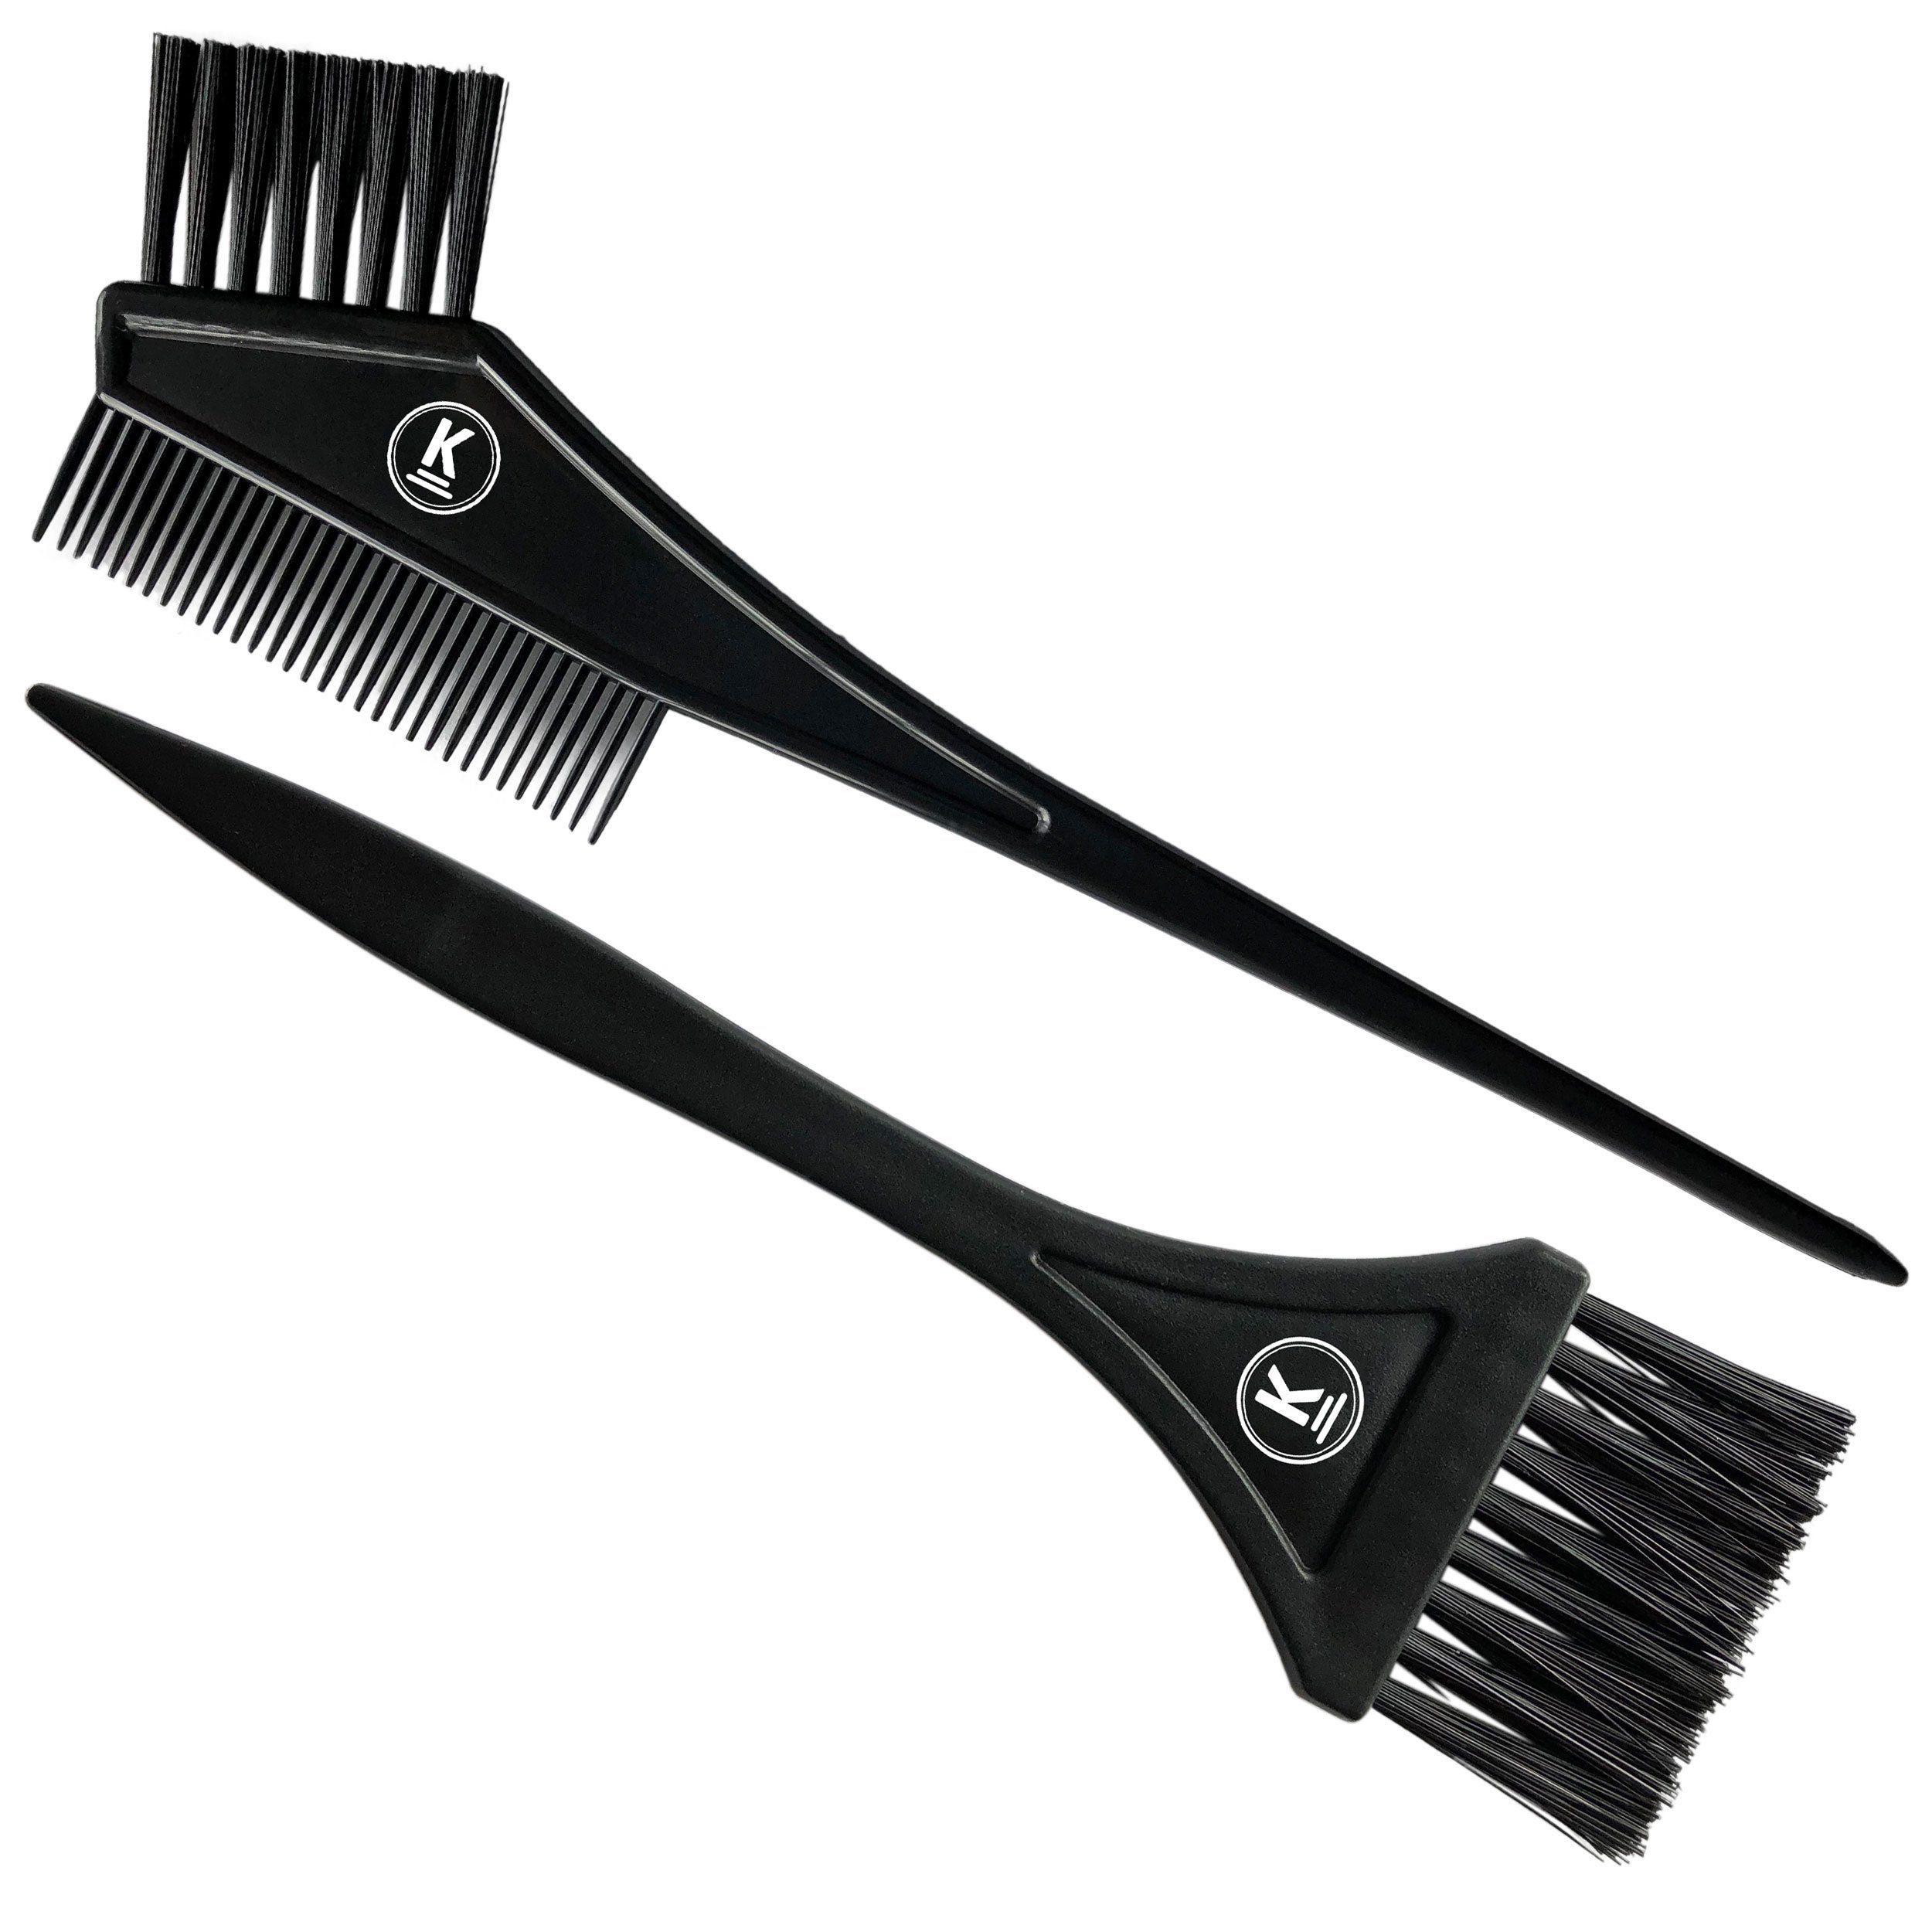 K-Pro Strähnenkamm Färbepinsel Set - Farb Pinsel breit zum Haare färben, schwarz mit Kamm